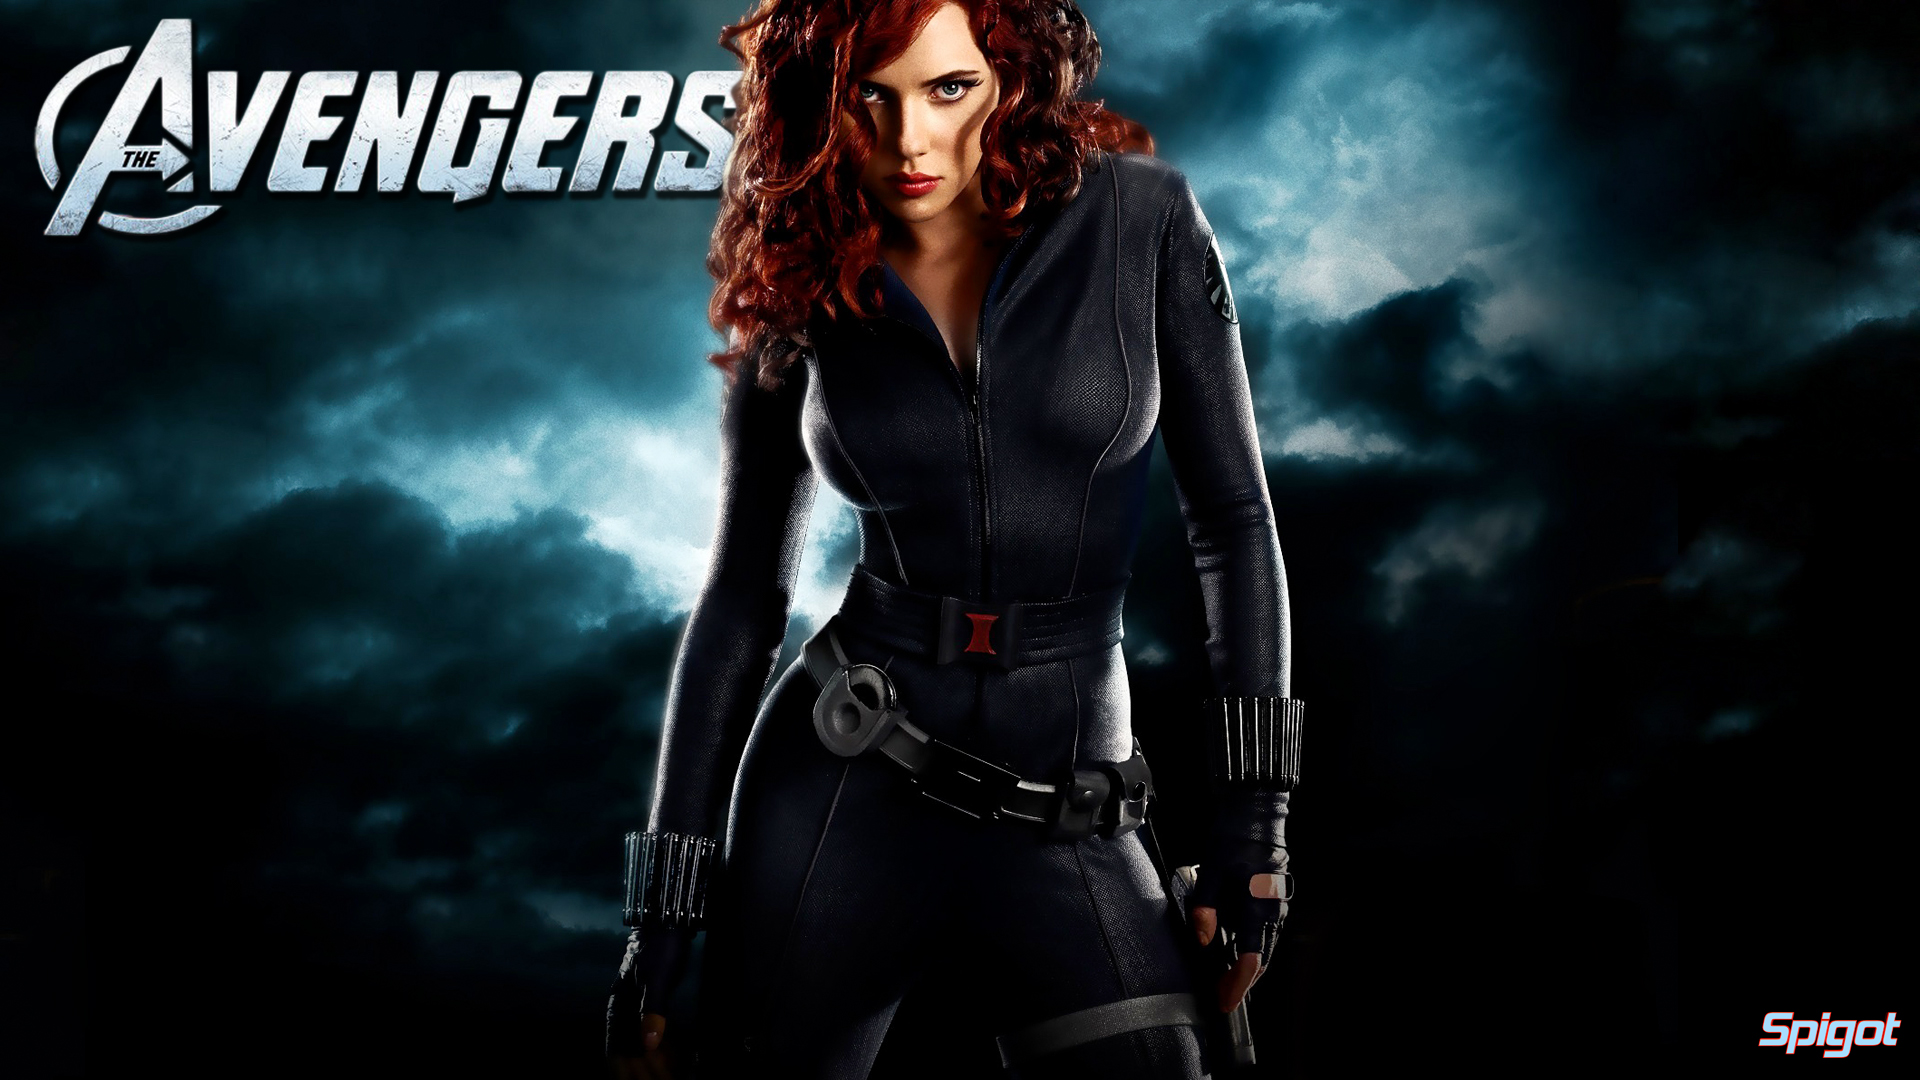 Another Avengers Wallpaper - Scarlett Johansson Avengers Wallpaper Hd , HD Wallpaper & Backgrounds